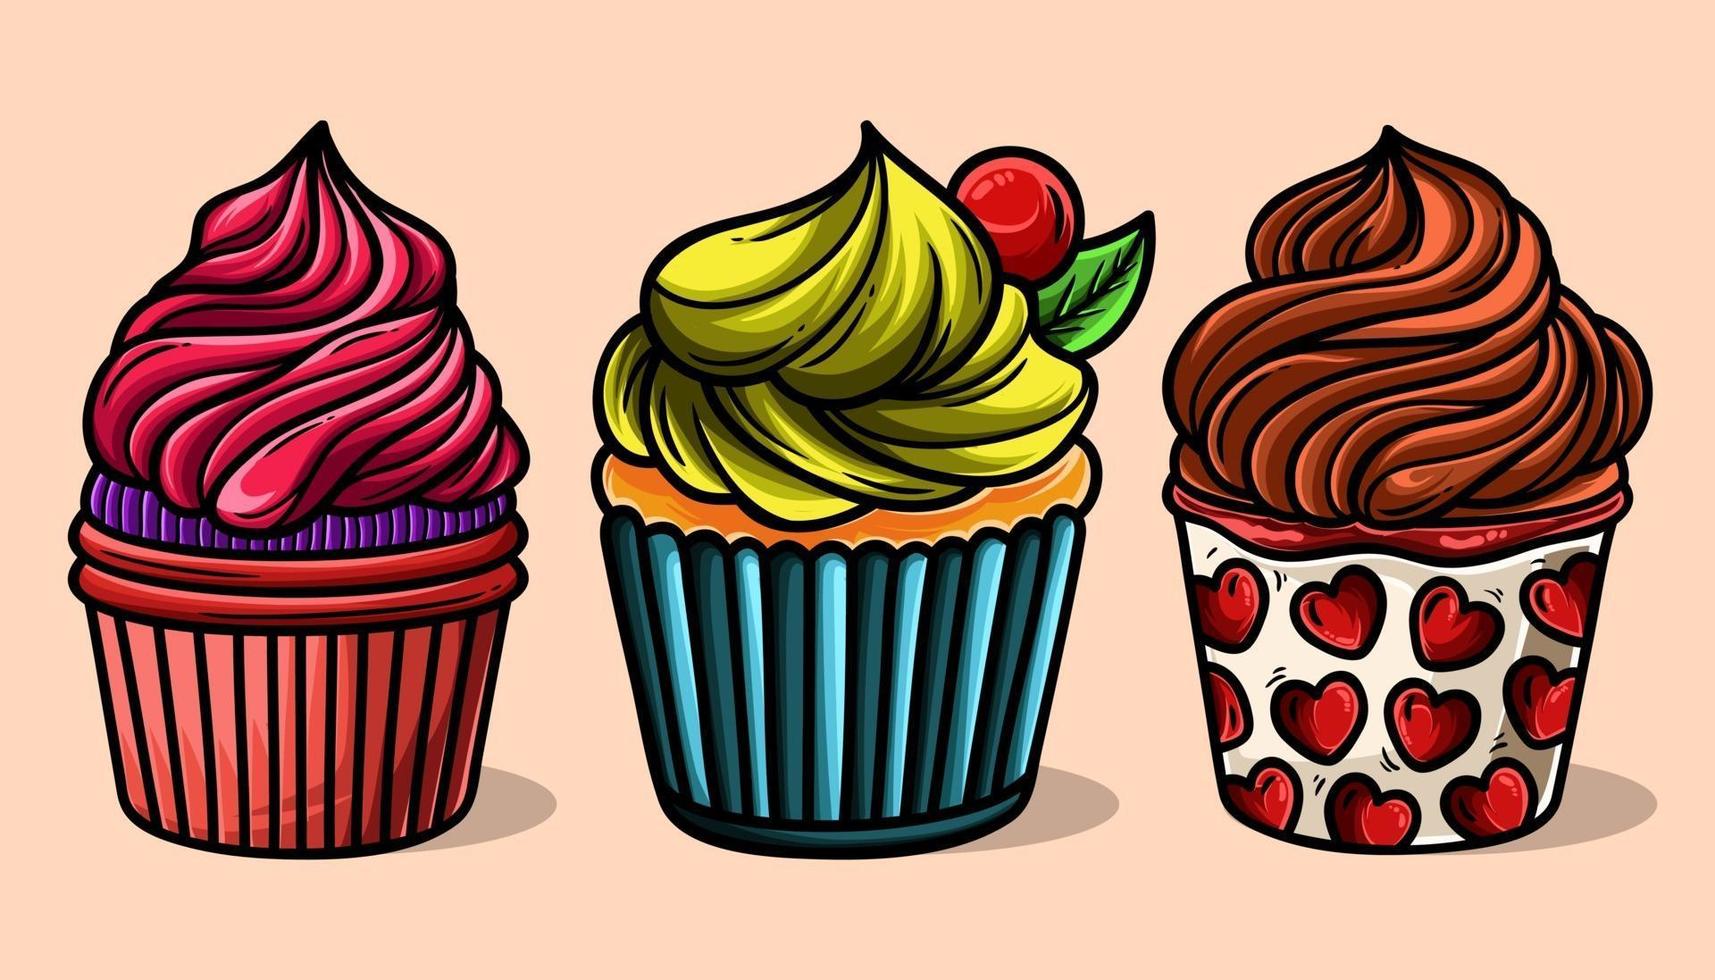 Essen süße leckere Desserts realistische Cupcakes mit verschiedenen Füllungen Sortimentset isoliert vektor